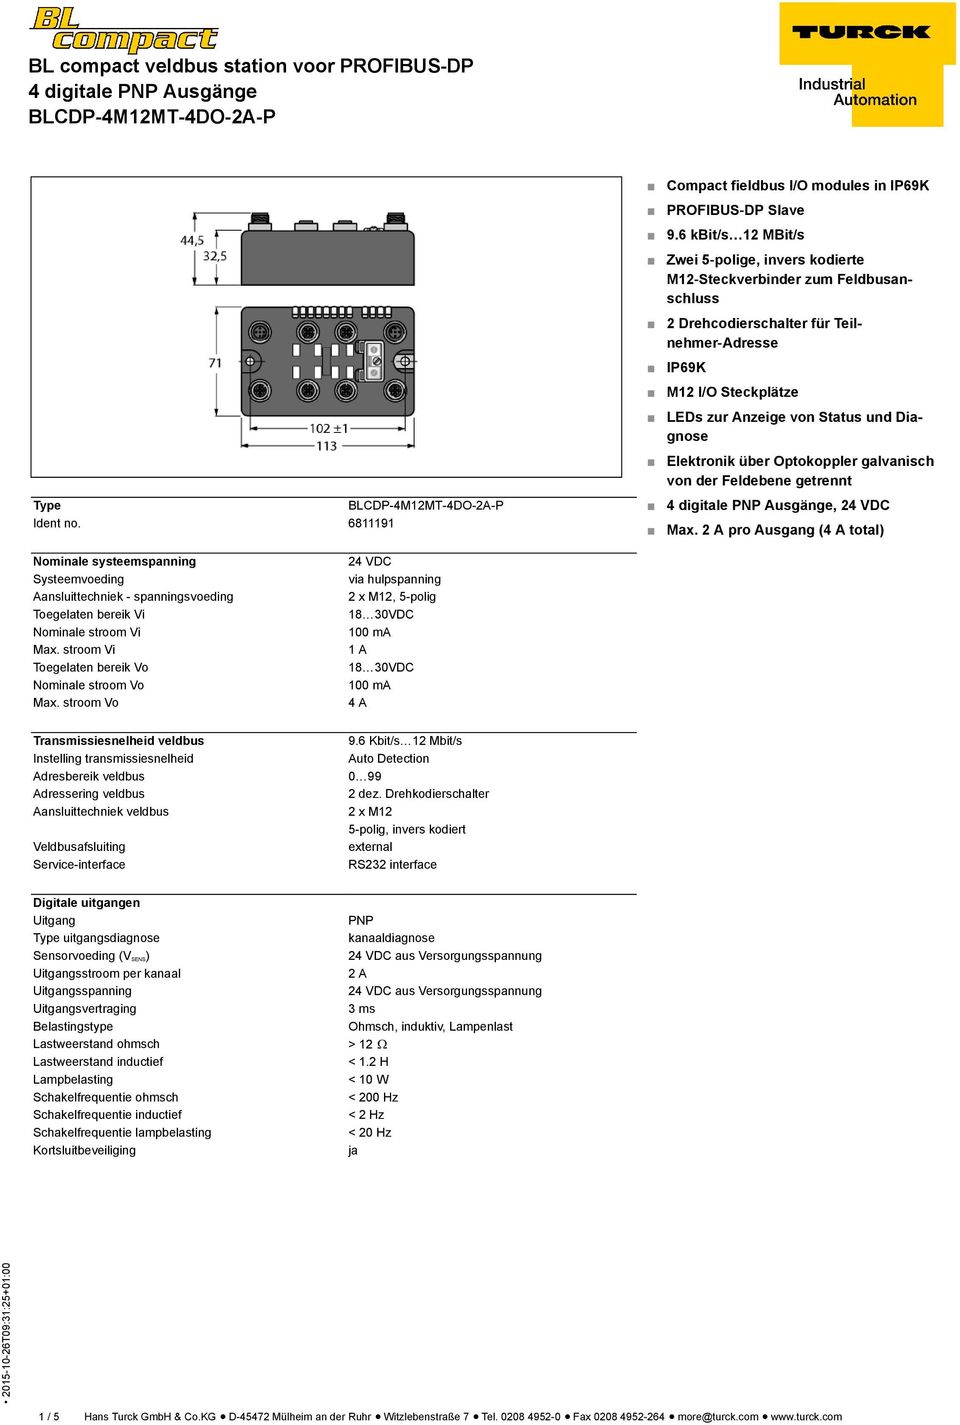 Diagnose Elektronik über Optokoppler galvanisch von der Feldebene getrennt Type Ident no. 6811191, 24 VDC Max.